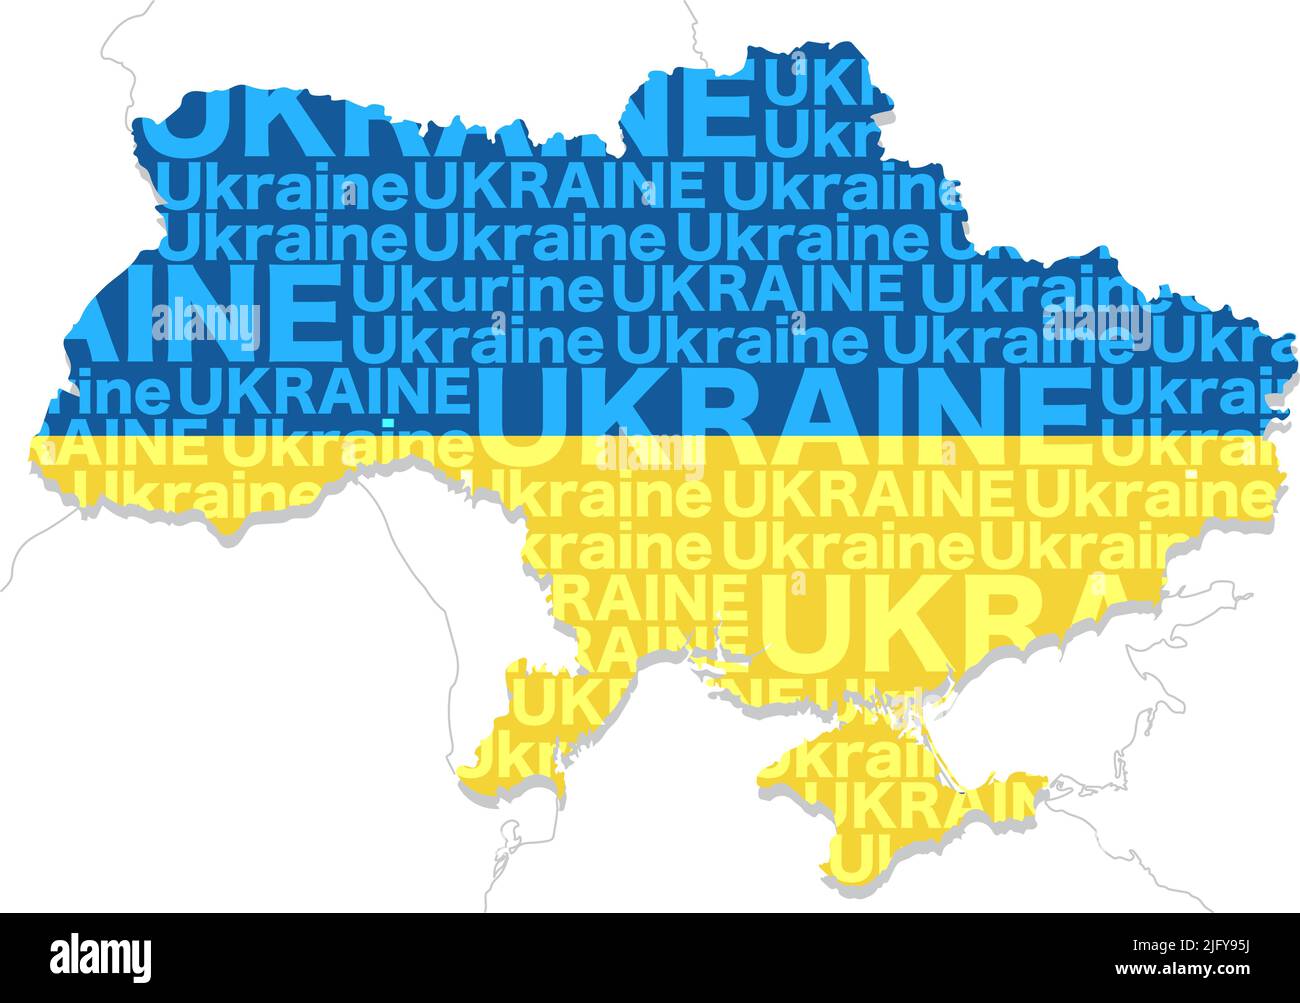 Mappa dell'Ucraina composta dalla forma della terra, il nome del Paese e i colori della bandiera nazionale. Illustrazione vettoriale. Illustrazione Vettoriale